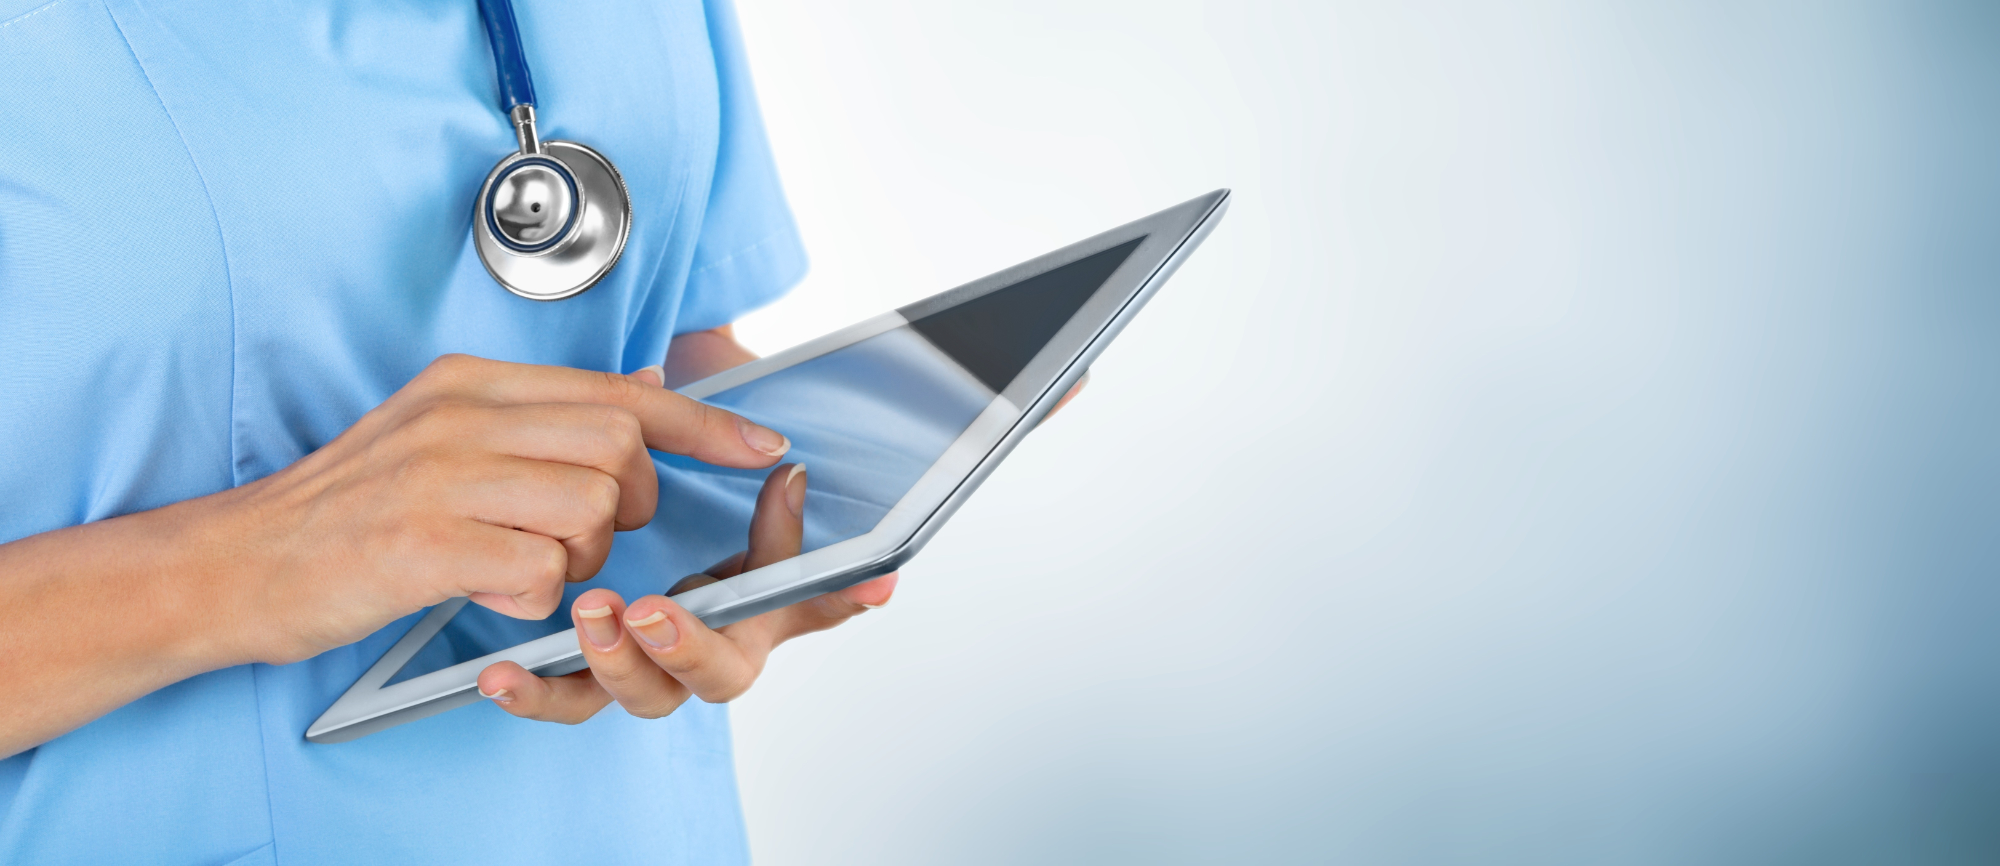 Warum ist Digitalisierung für Pflegekräfte wichtig?